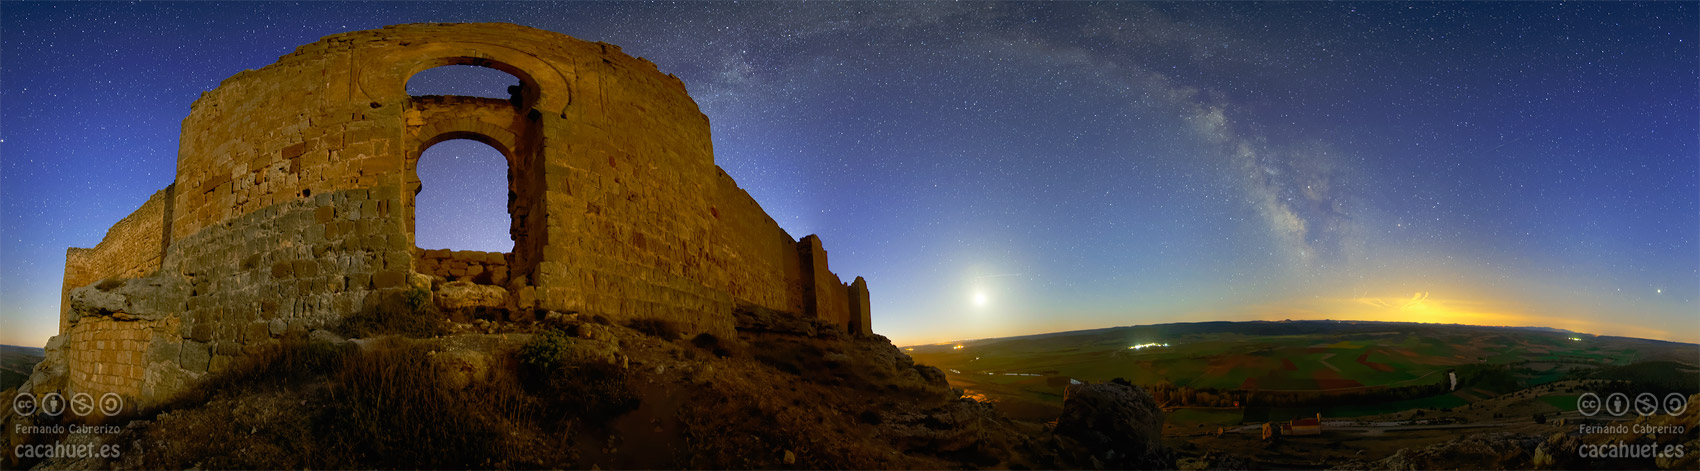 Vía Láctea al amanecer desde el castillo de Gormaz